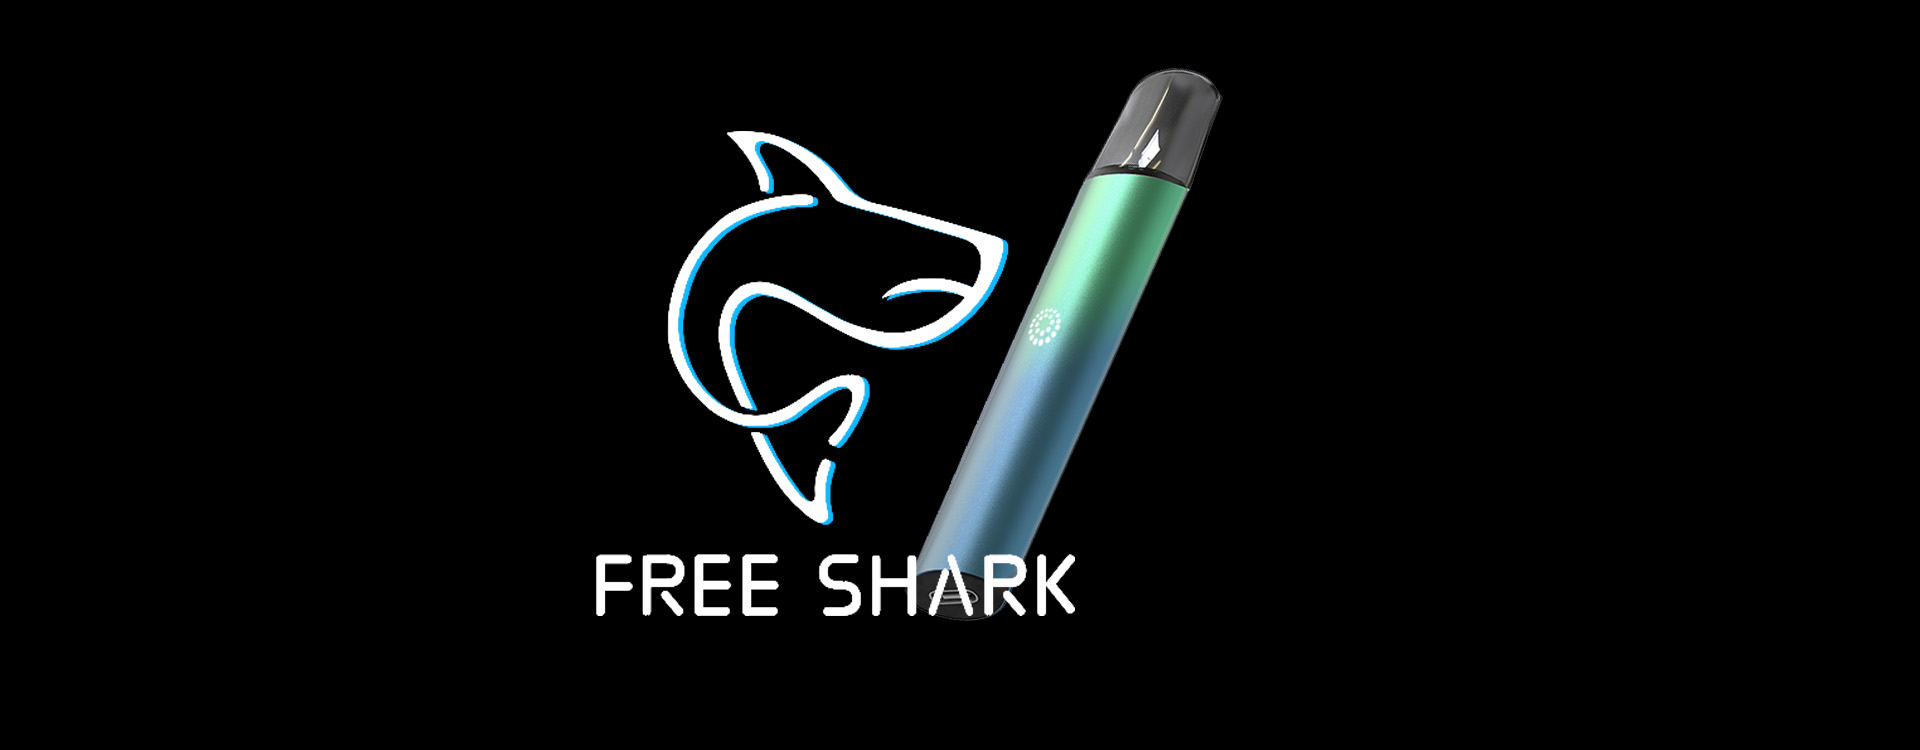 freeshark brand